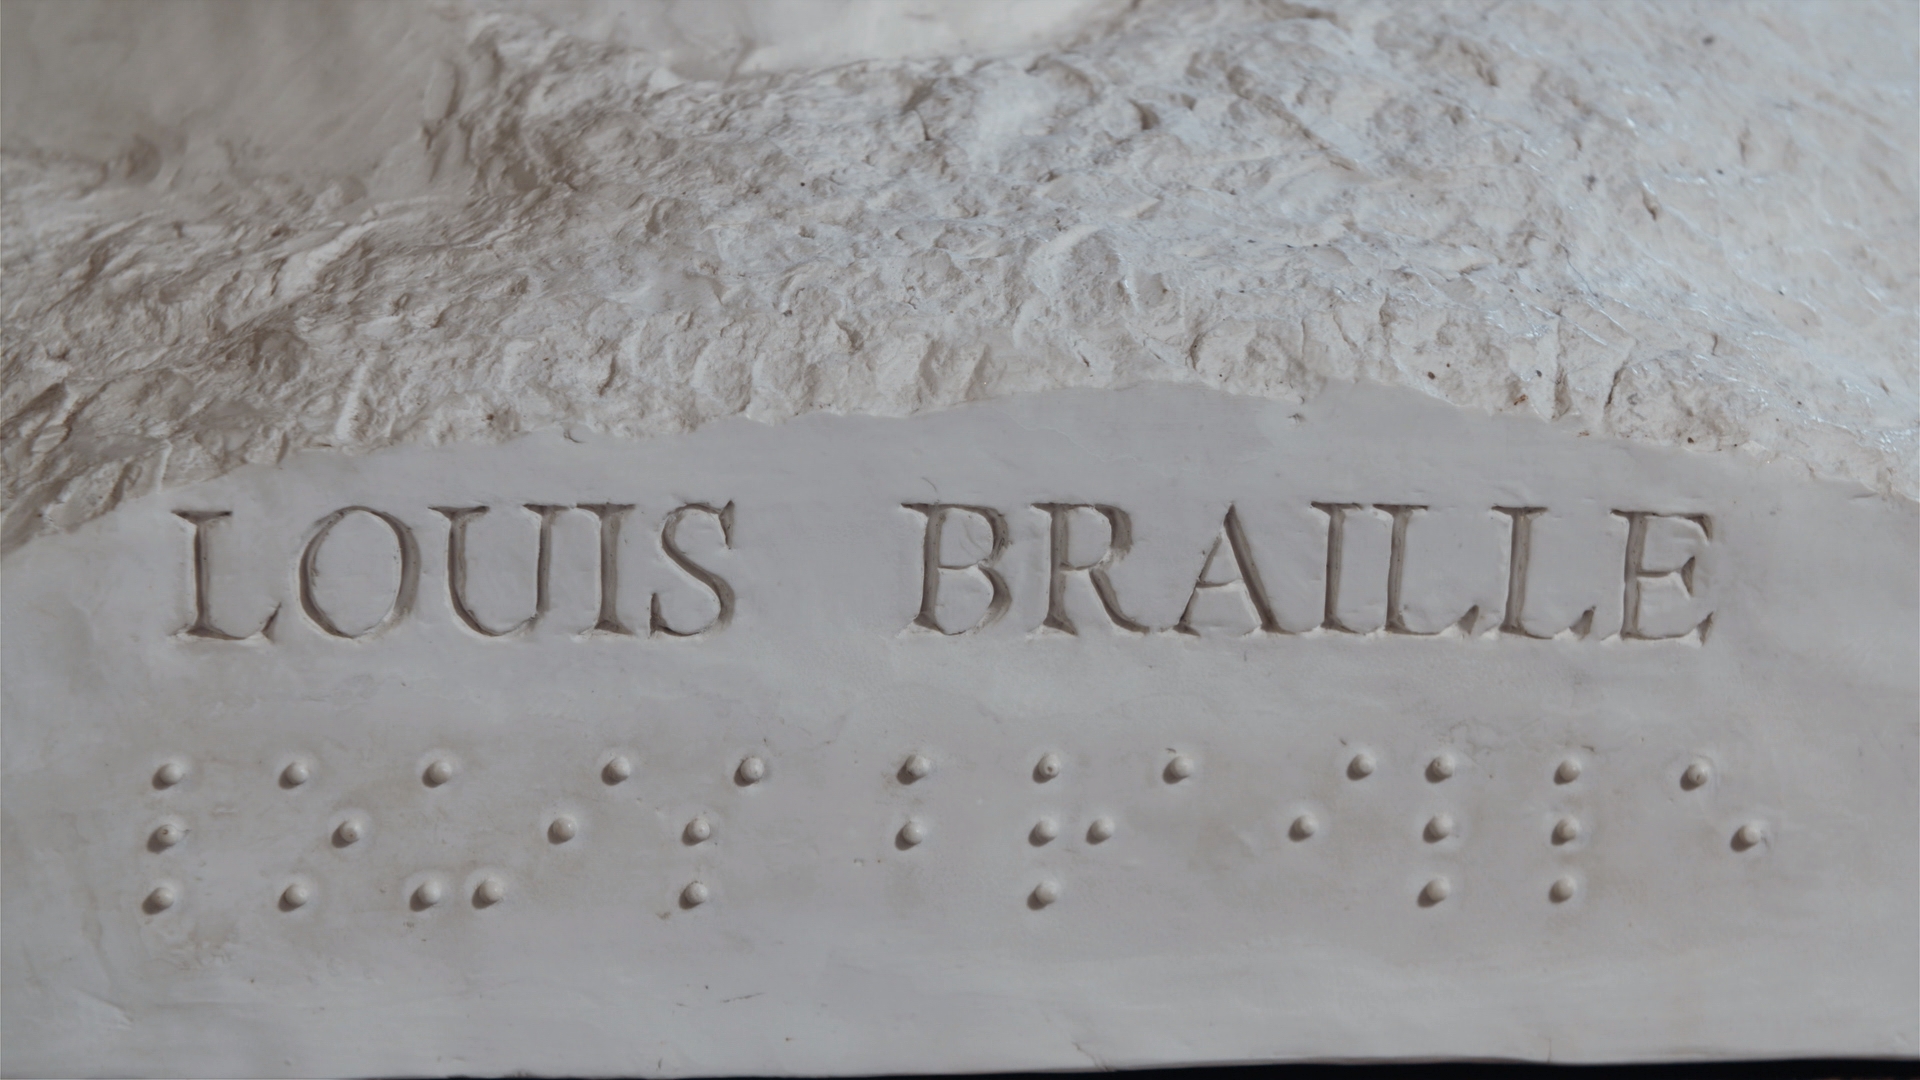 Socle d’un buste de Louis Braille